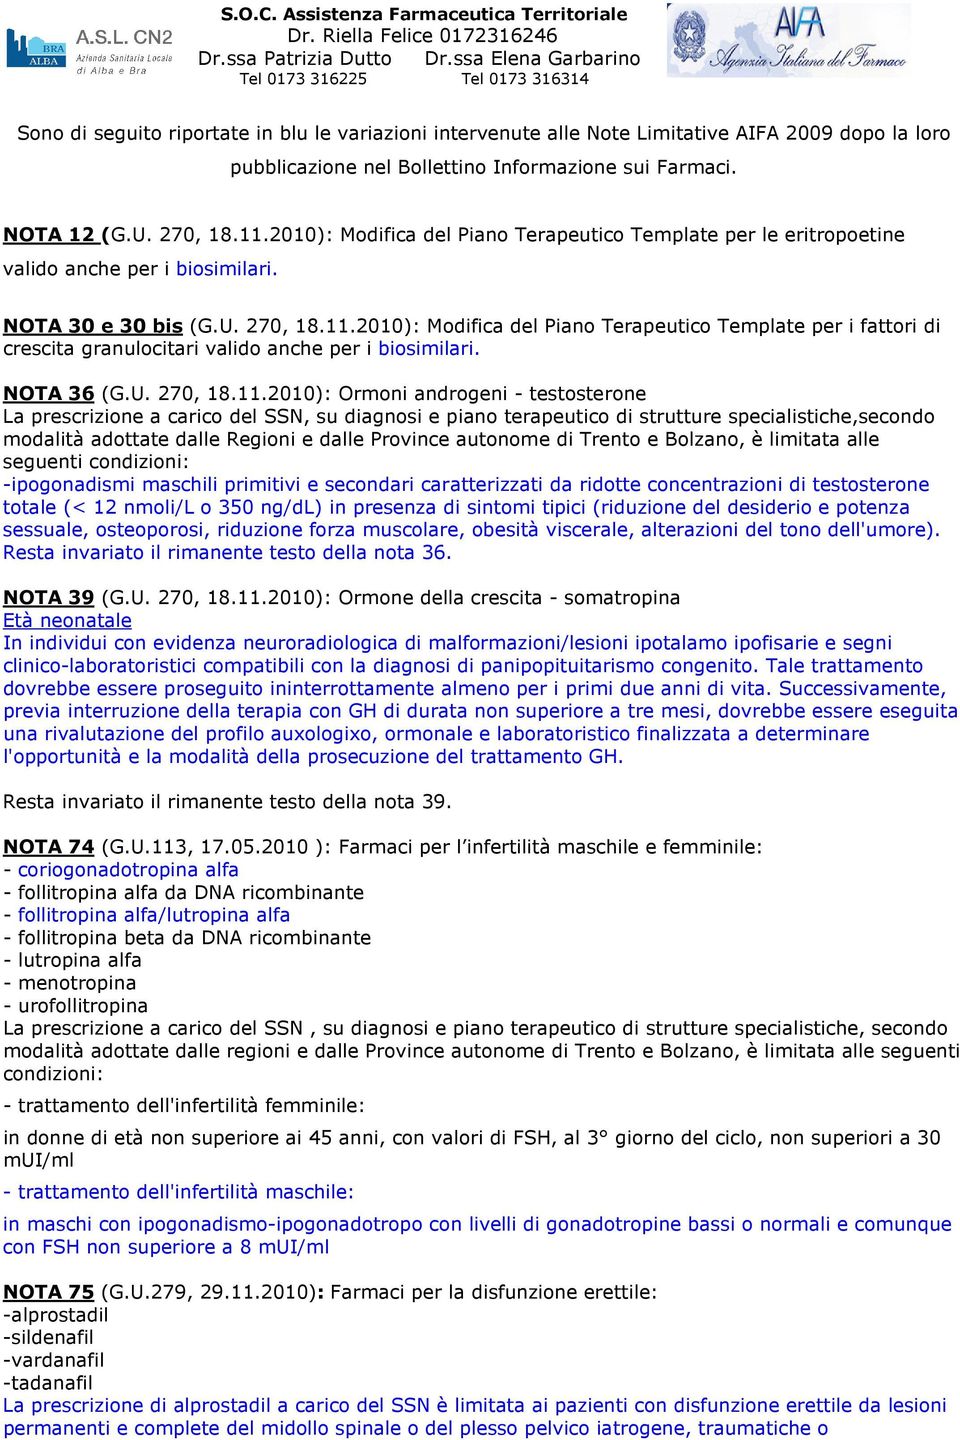 sui Farmaci. NOTA 12 (G.U. 270, 18.11.2010): Modifica del Piano Terapeutico Template per le eritropoetine valido anche per i biosimilari. NOTA 30 e 30 bis (G.U. 270, 18.11.2010): Modifica del Piano Terapeutico Template per i fattori di crescita granulocitari valido anche per i biosimilari.